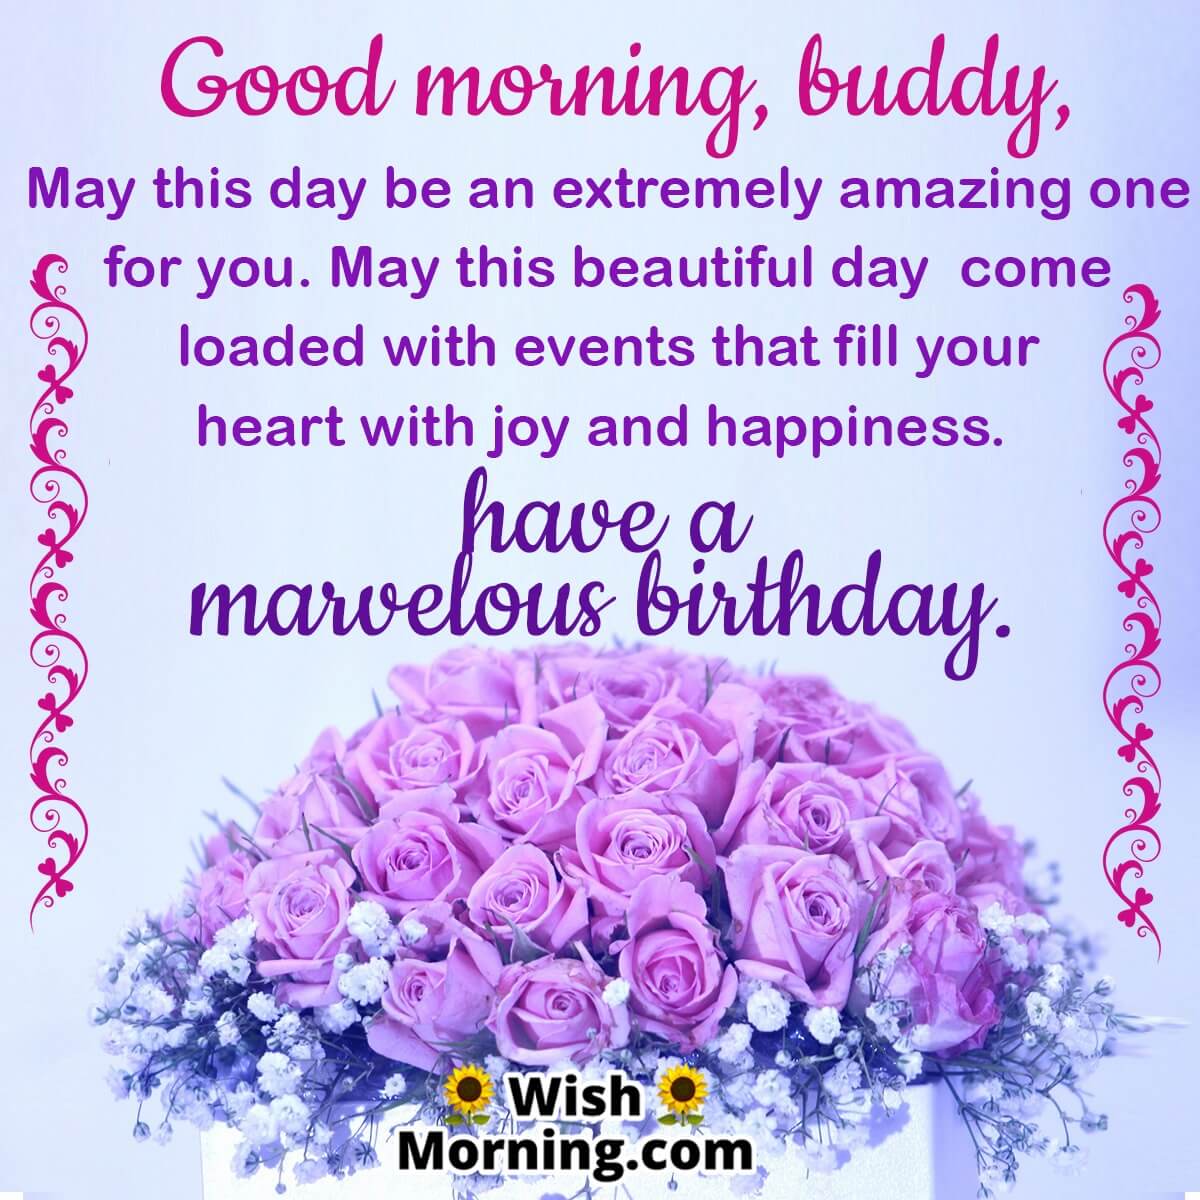 Good Morning Buddy Birthday Wish